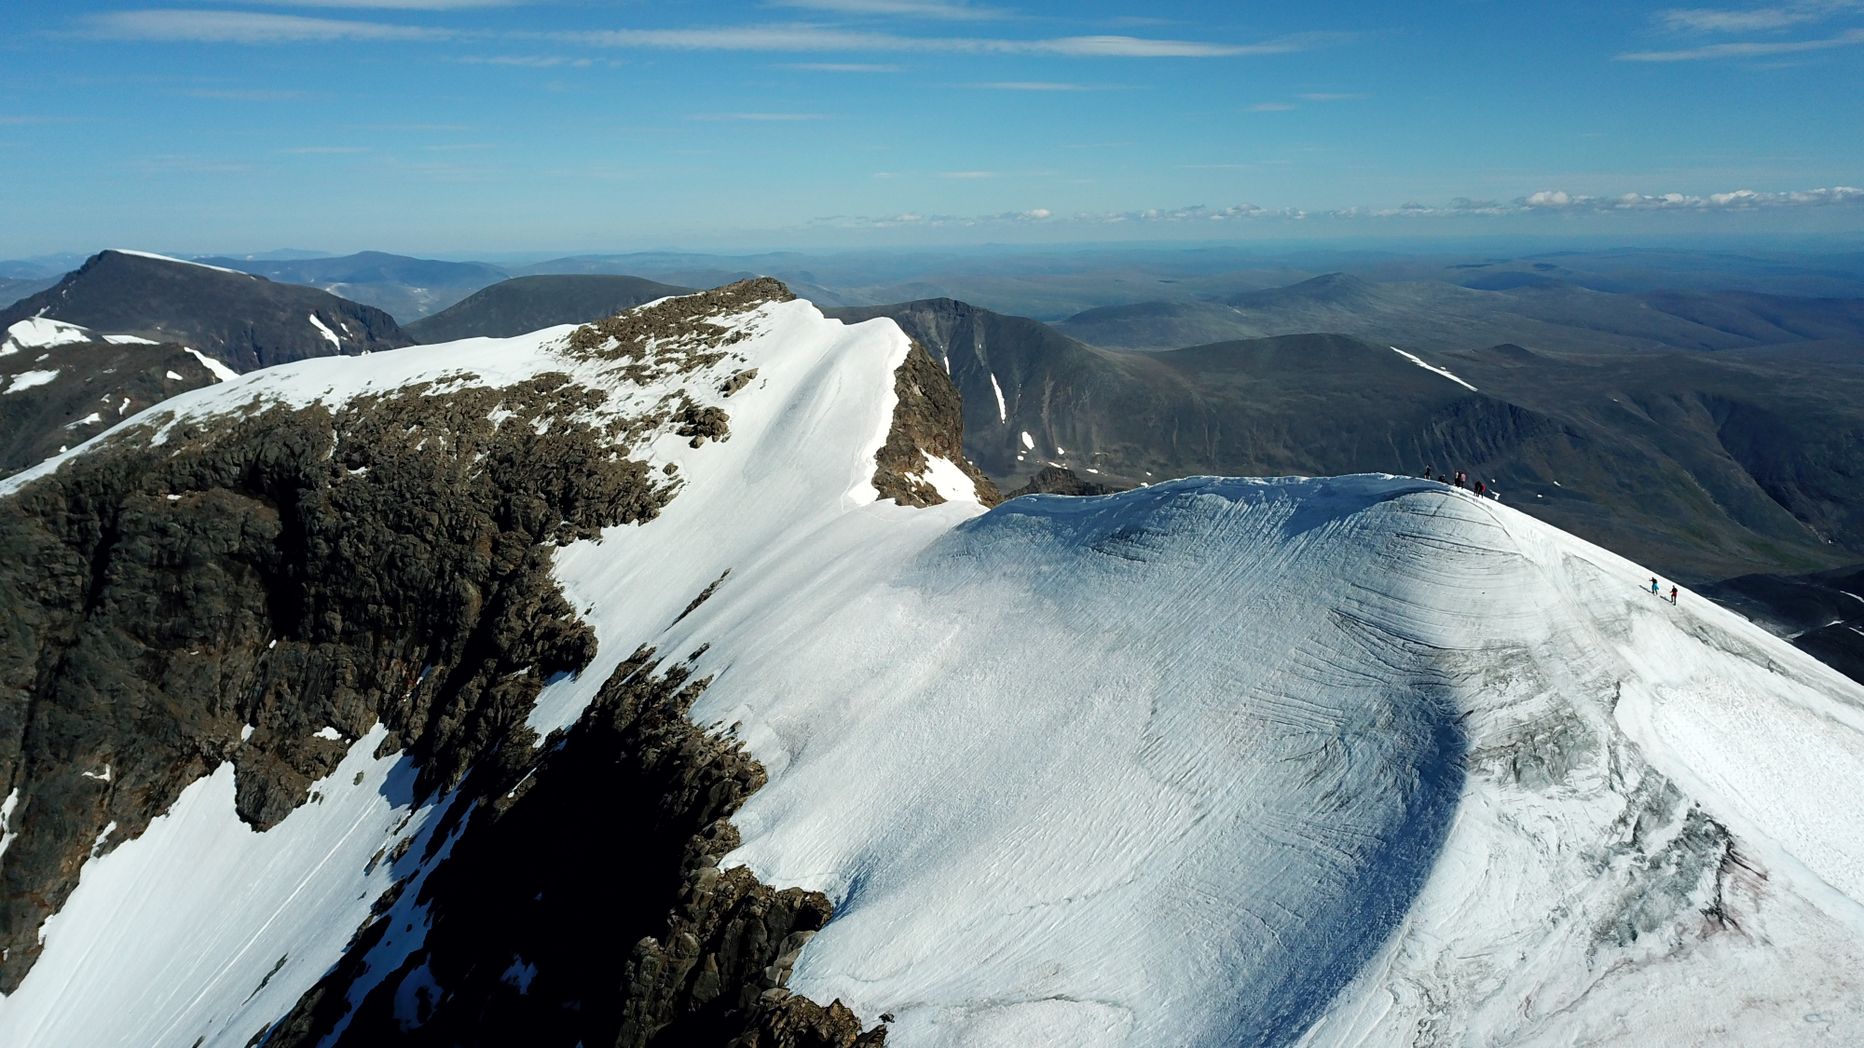 Rootsi kõrgeim mägi Kebnekaise, mille kõrgus on 2096 meetrit